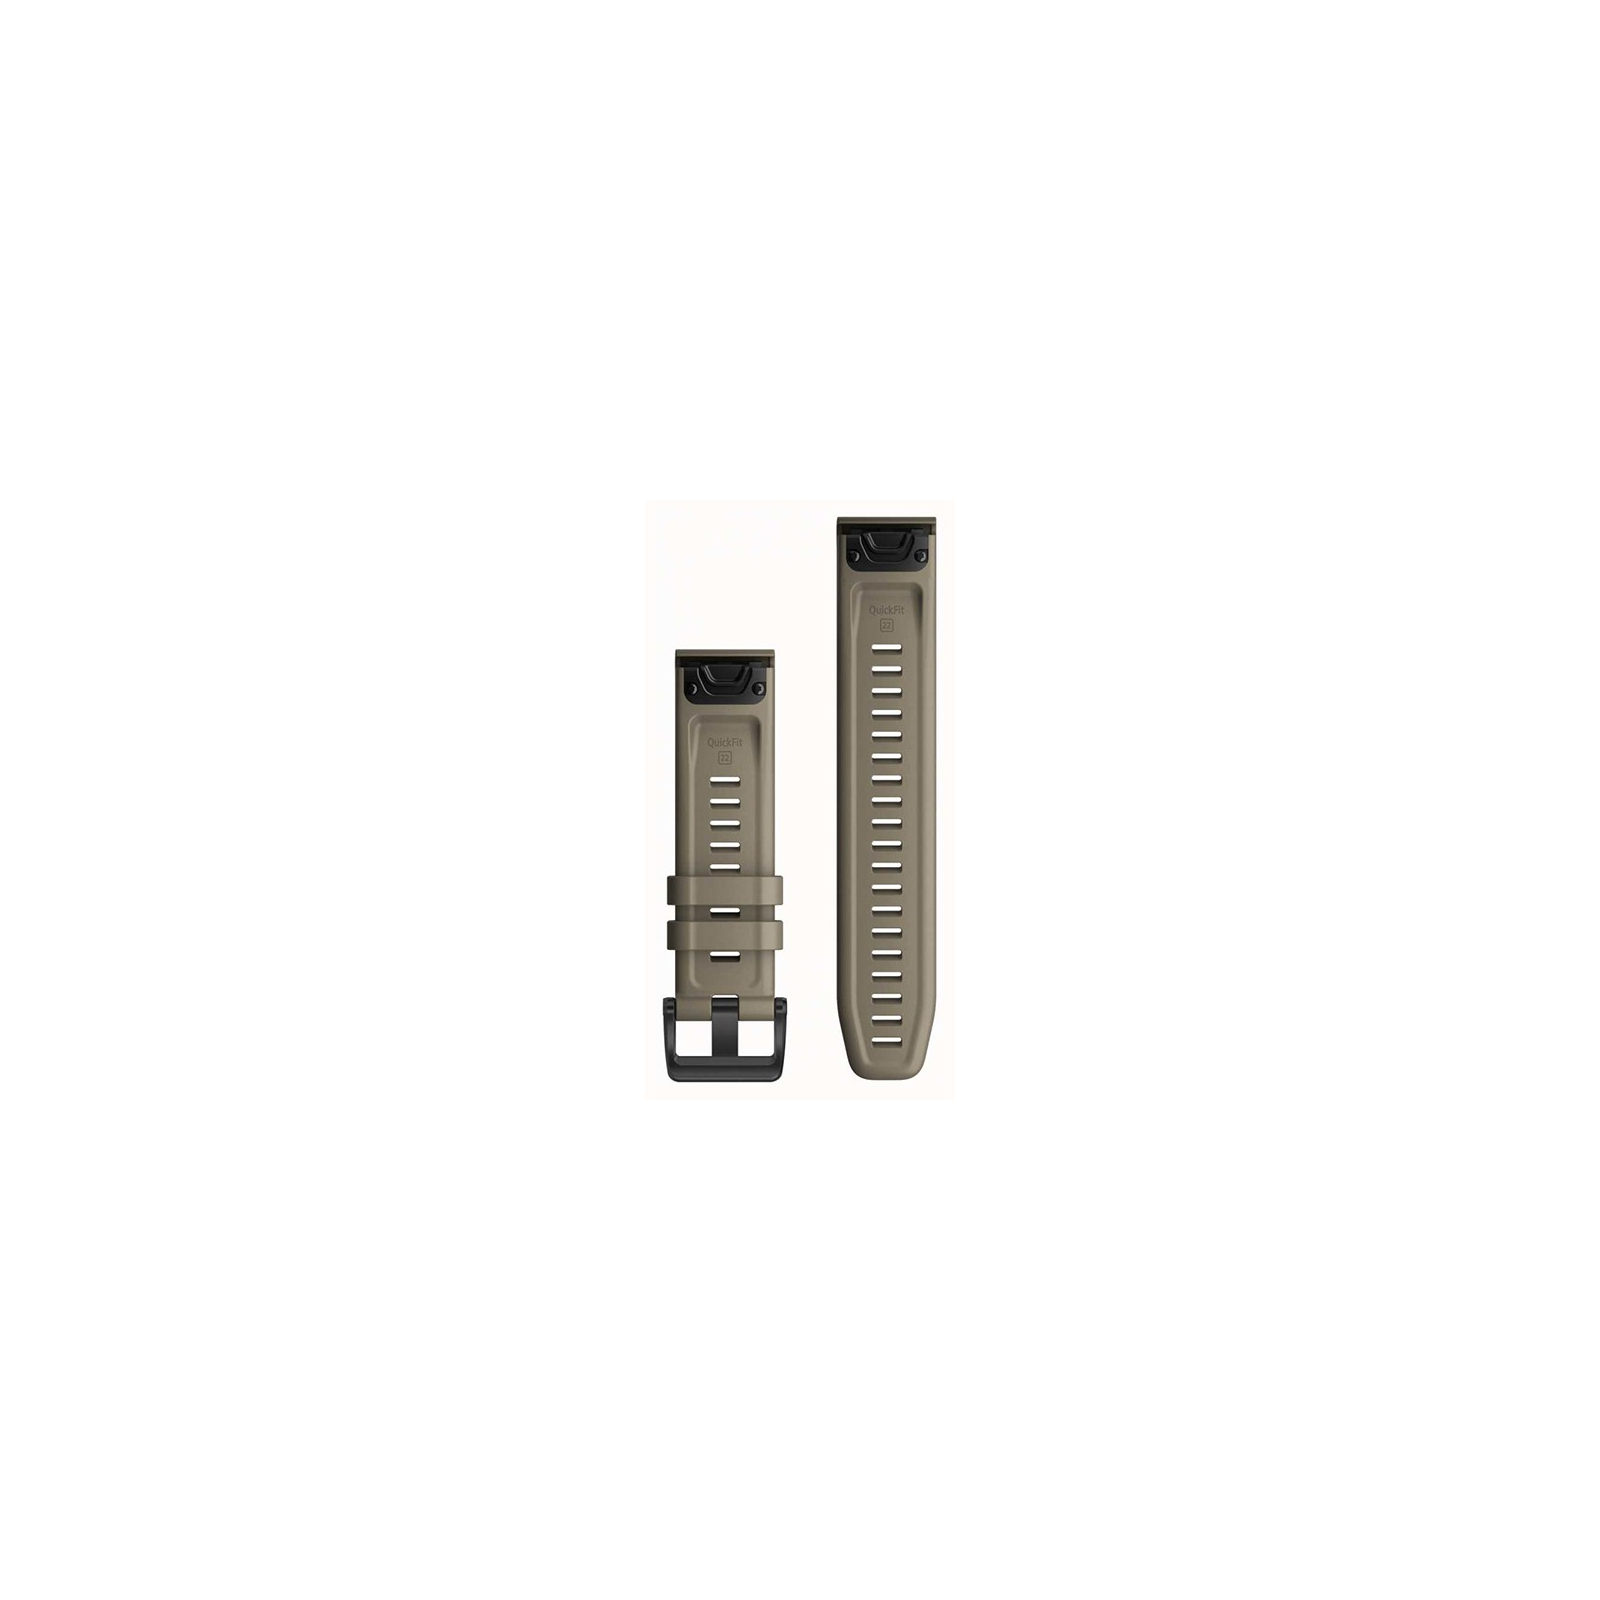 Ремешок для смарт-часов Garmin fenix 6 22mm QuickFit Dark Sandstone Silicone (010-12863-02) изображение 2